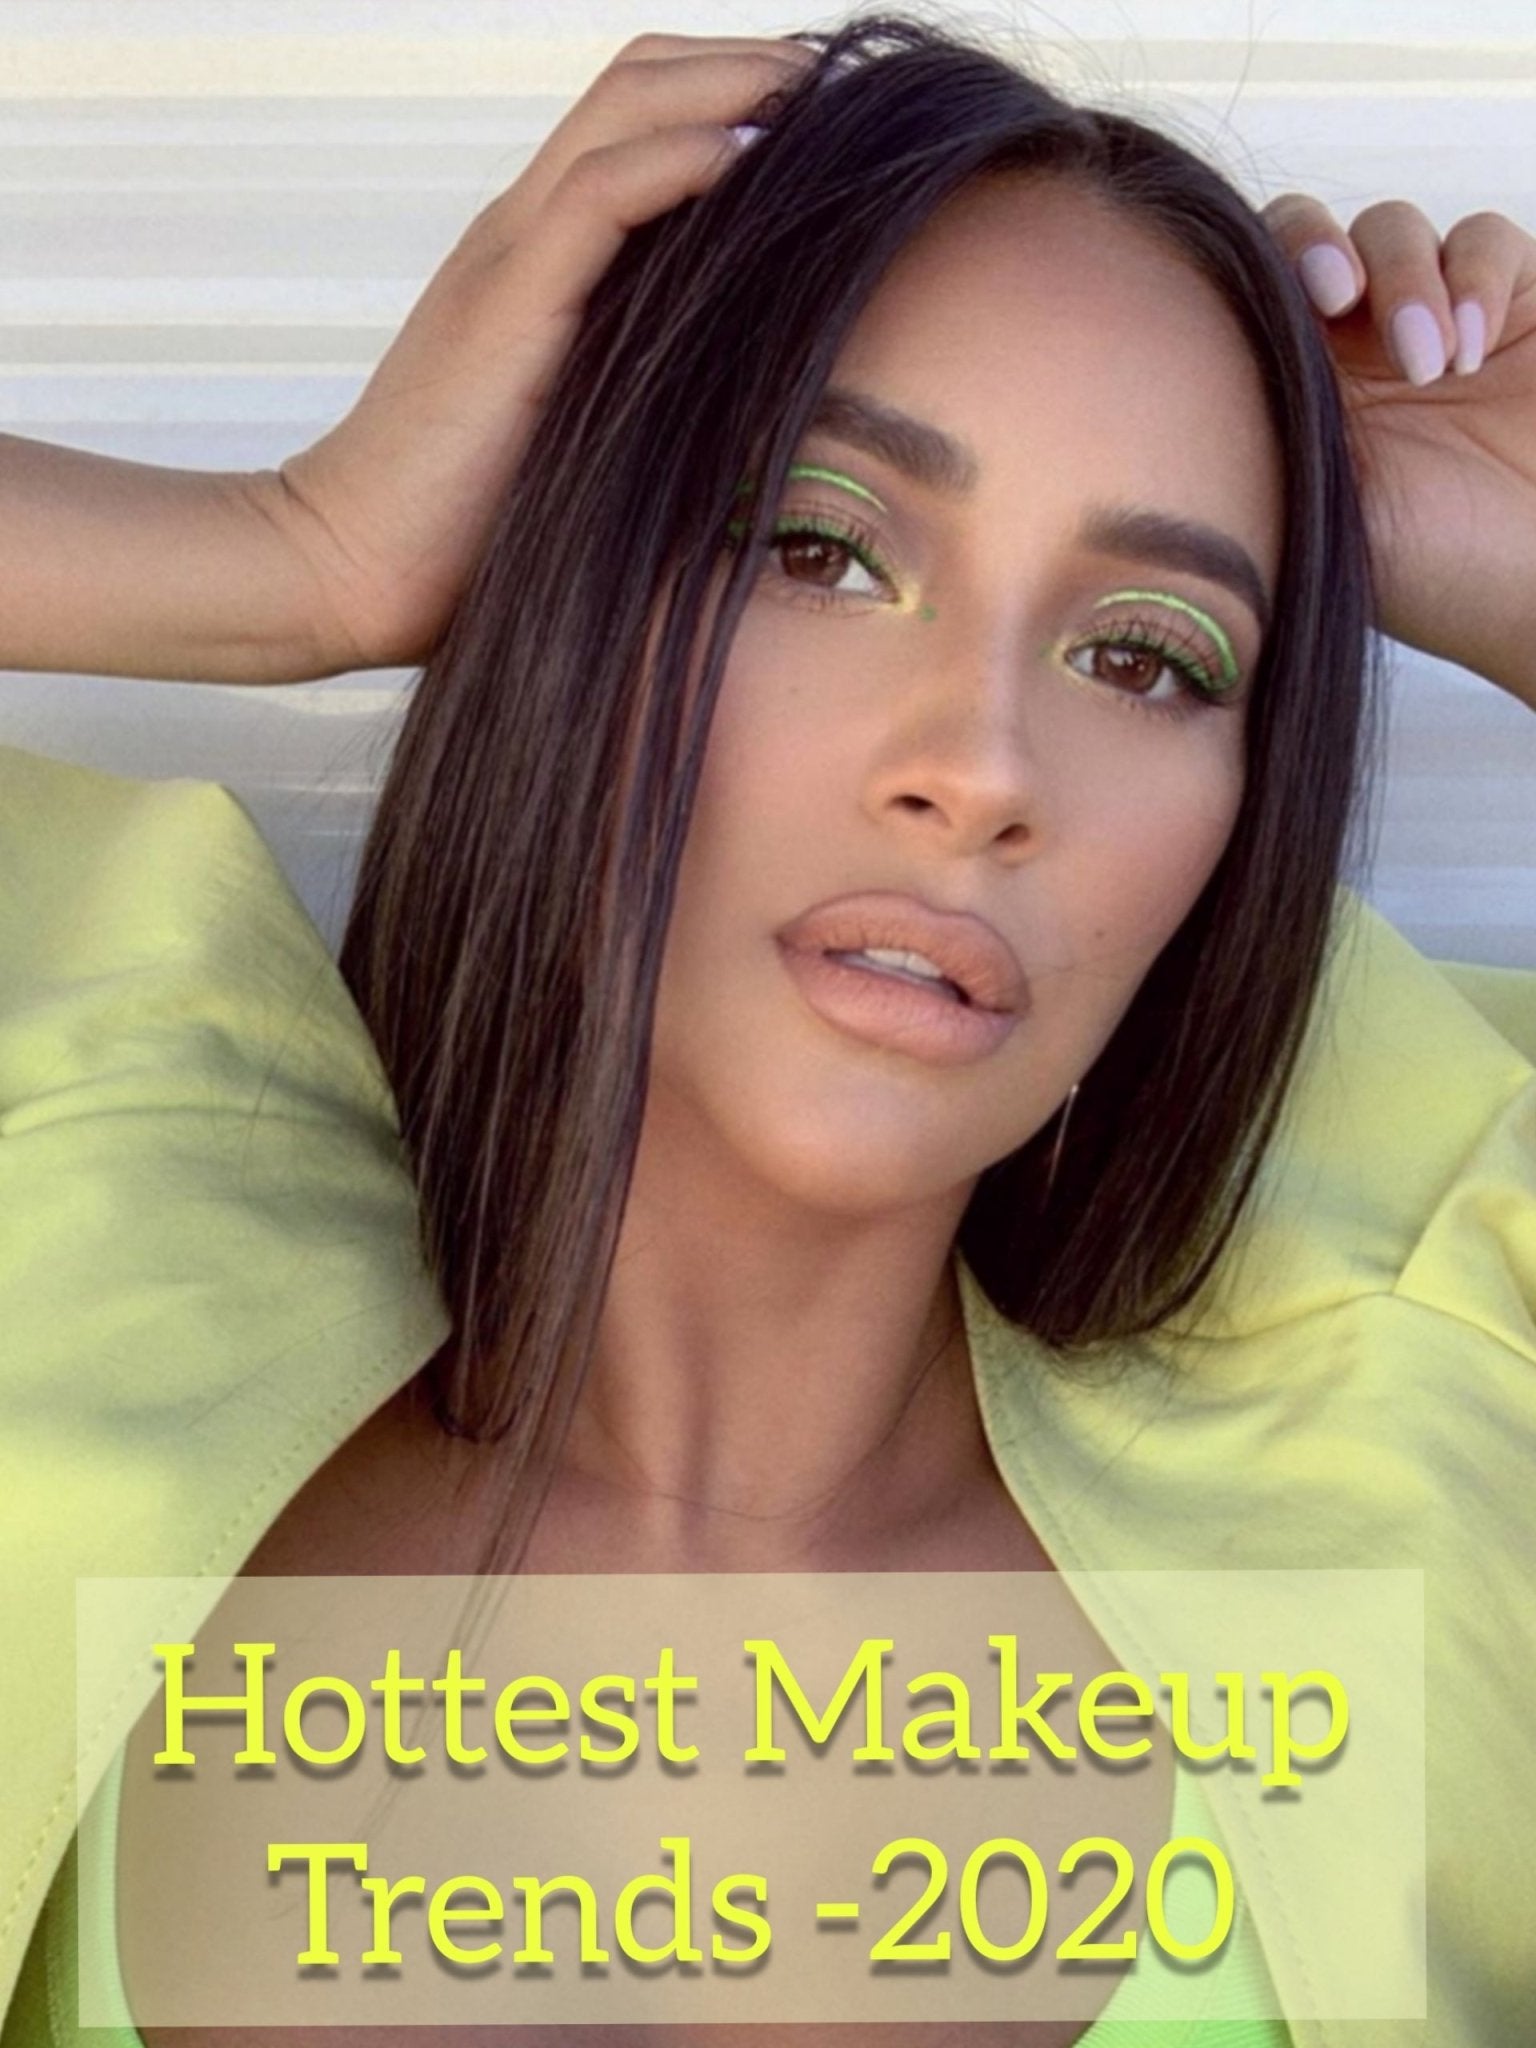 Hottest Makeup Trends 2020 - Ciceroni